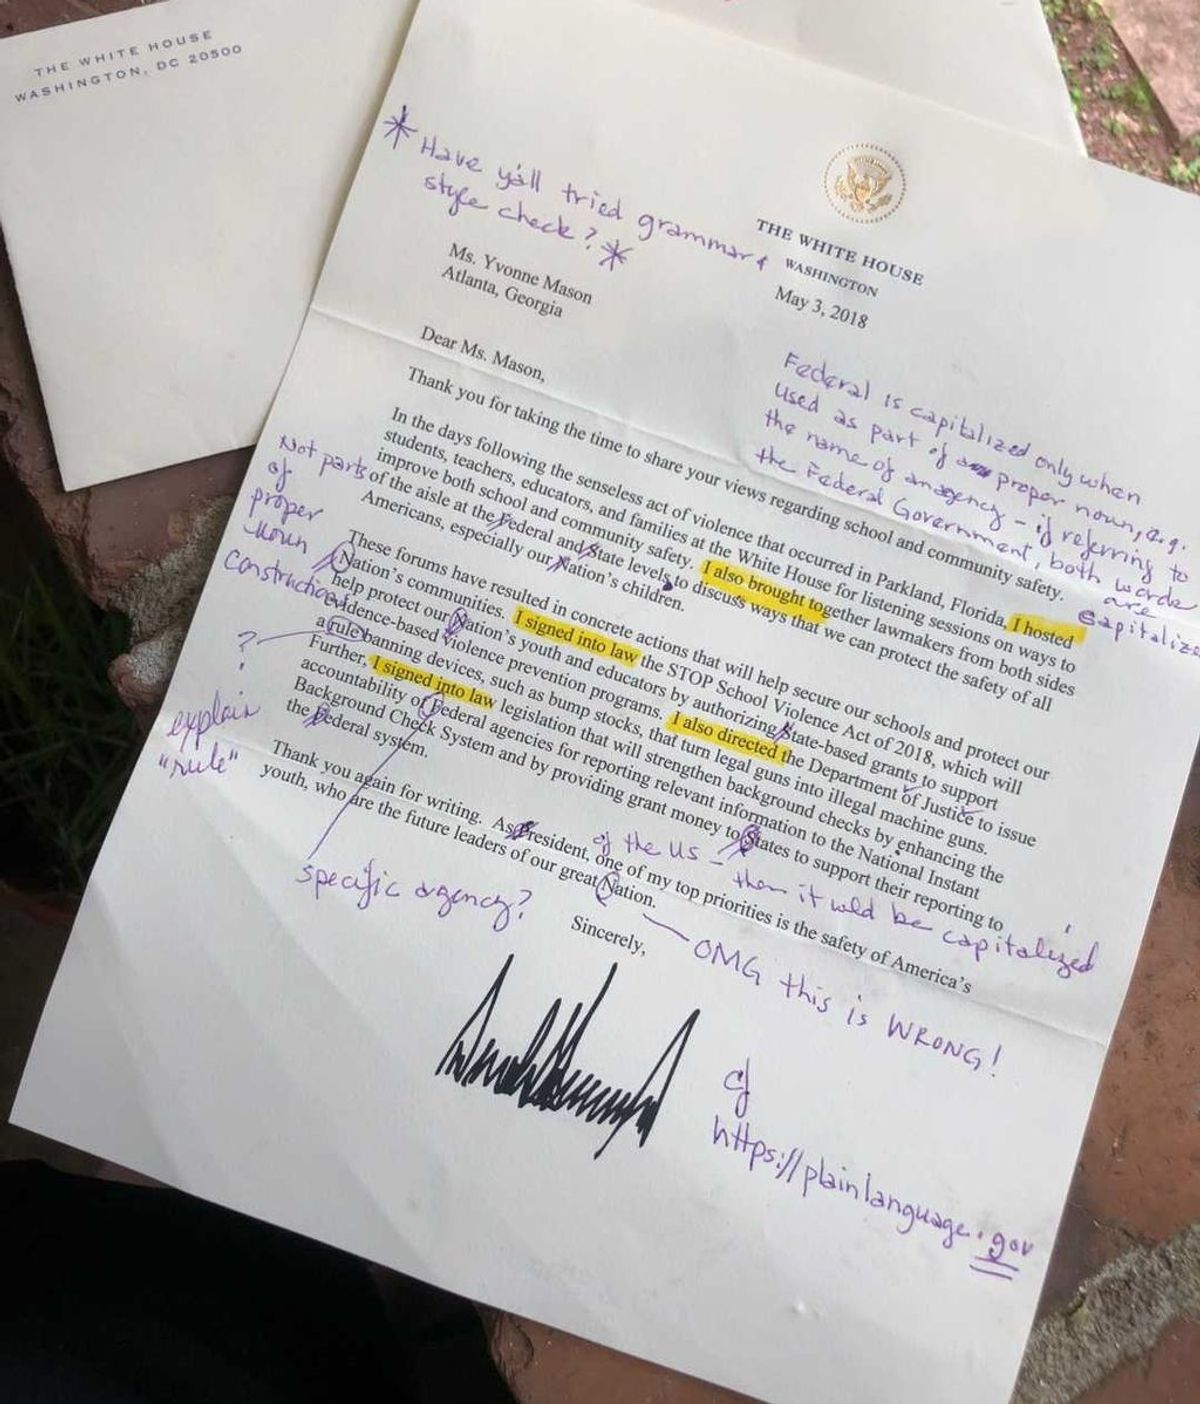 Una profesora jubilada corrige una carta oficial de Trump y le entrega las correcciones